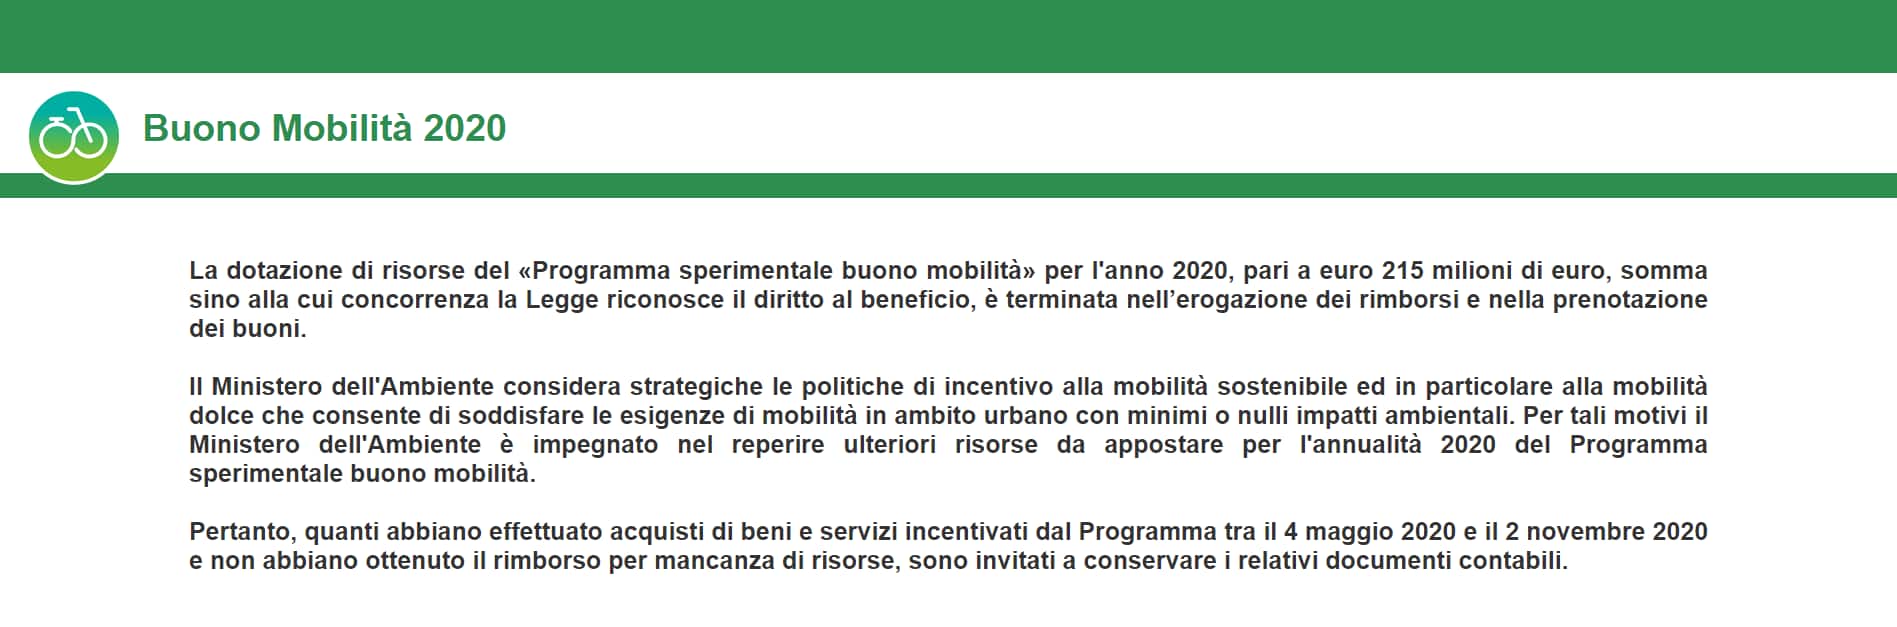 Screenshot dal sito www.buonomobilita.it